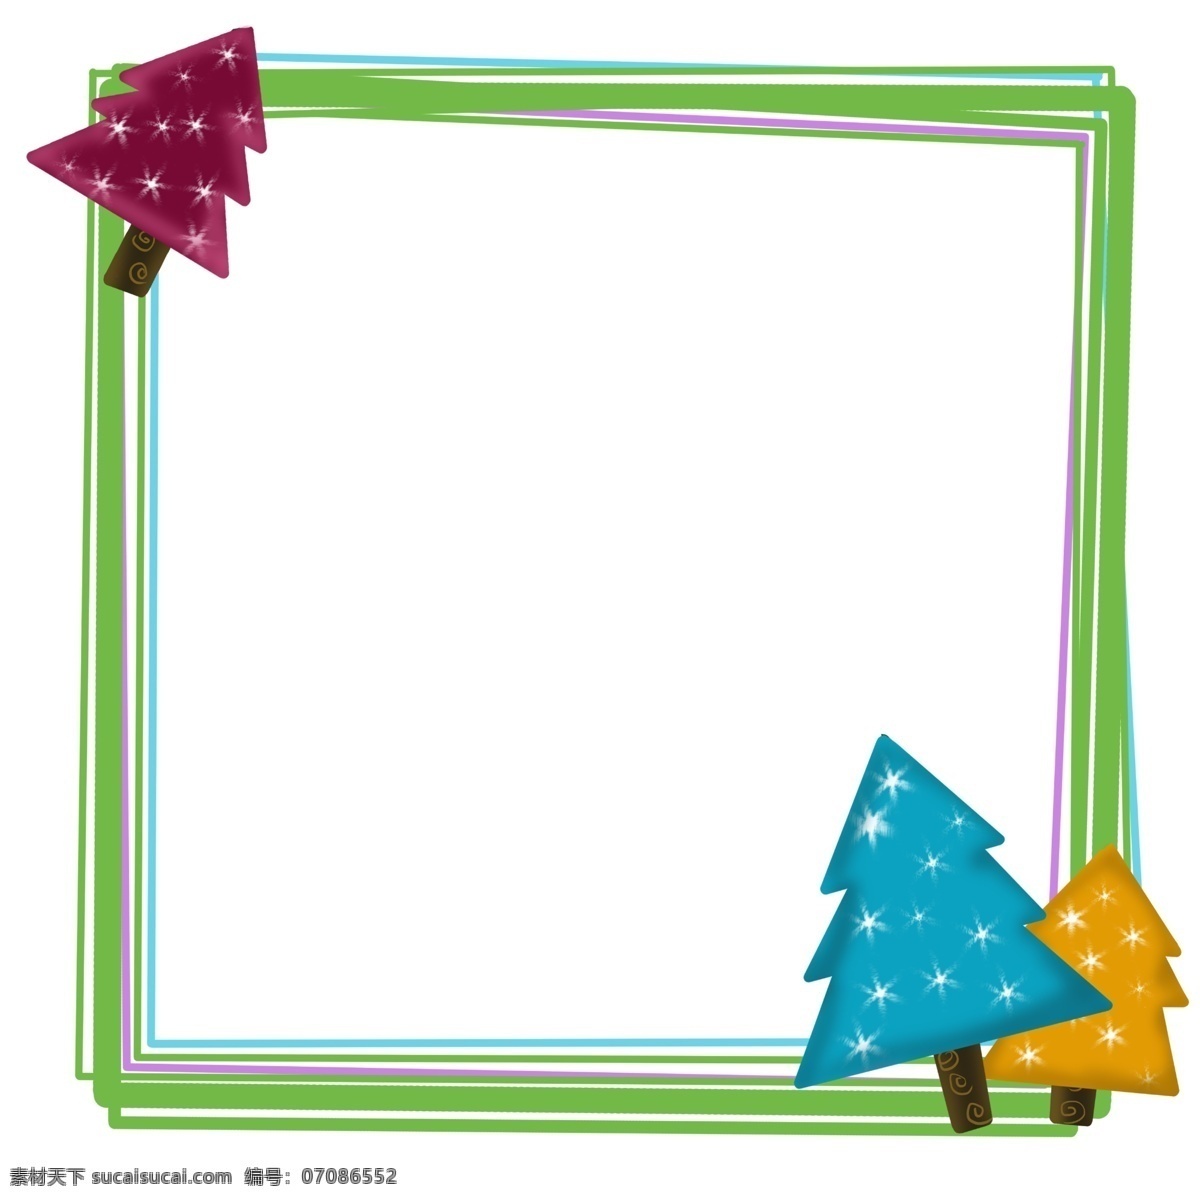 绿色 圣诞树 边框 唯美边框 边框插画 手绘边框 边框装饰 绿色的边框 漂亮的植物